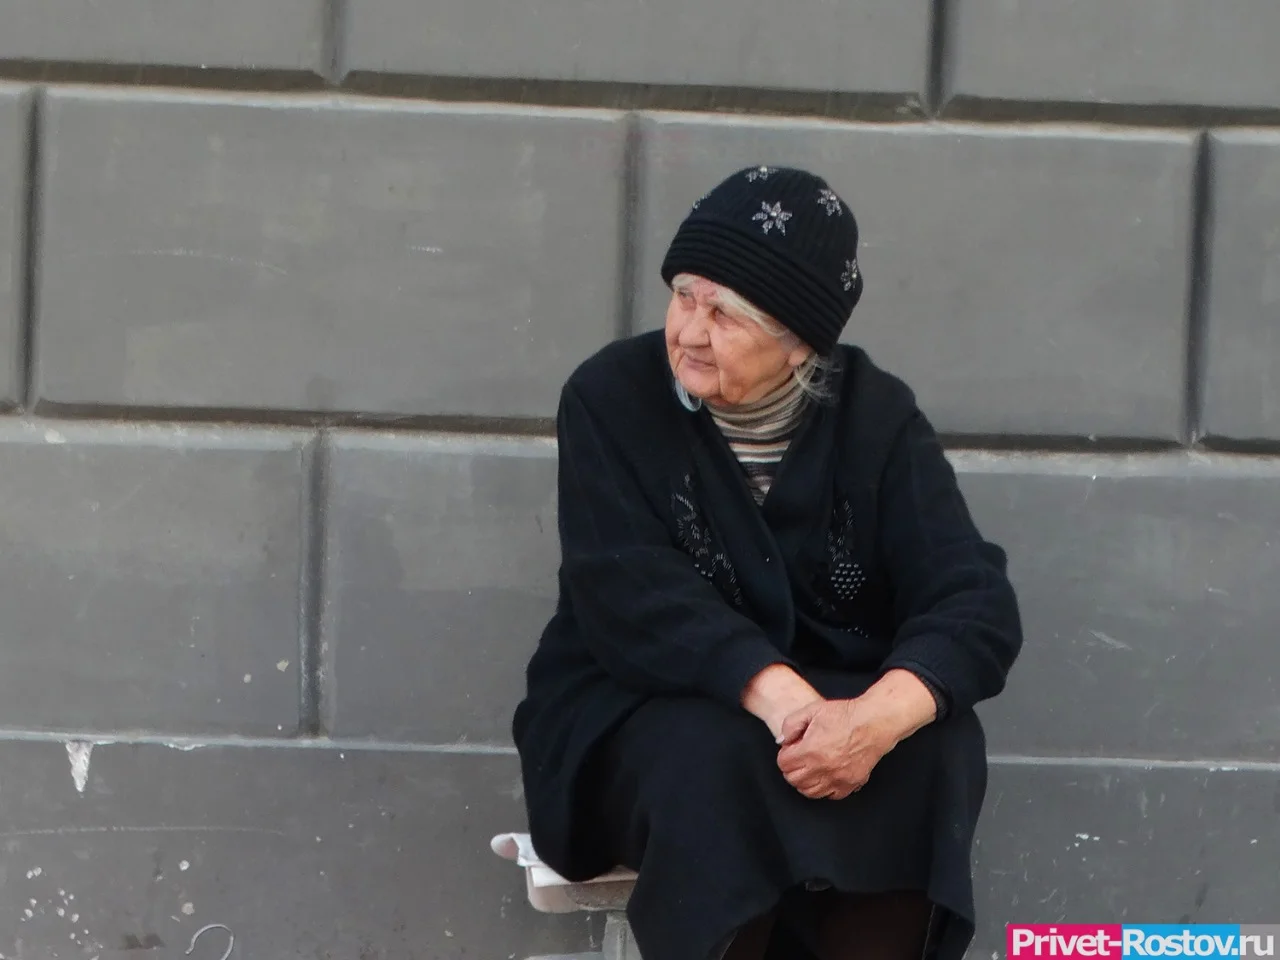 Из пенсии в январе изымут 6561 рубль. Что ждет российских пенсионеров?